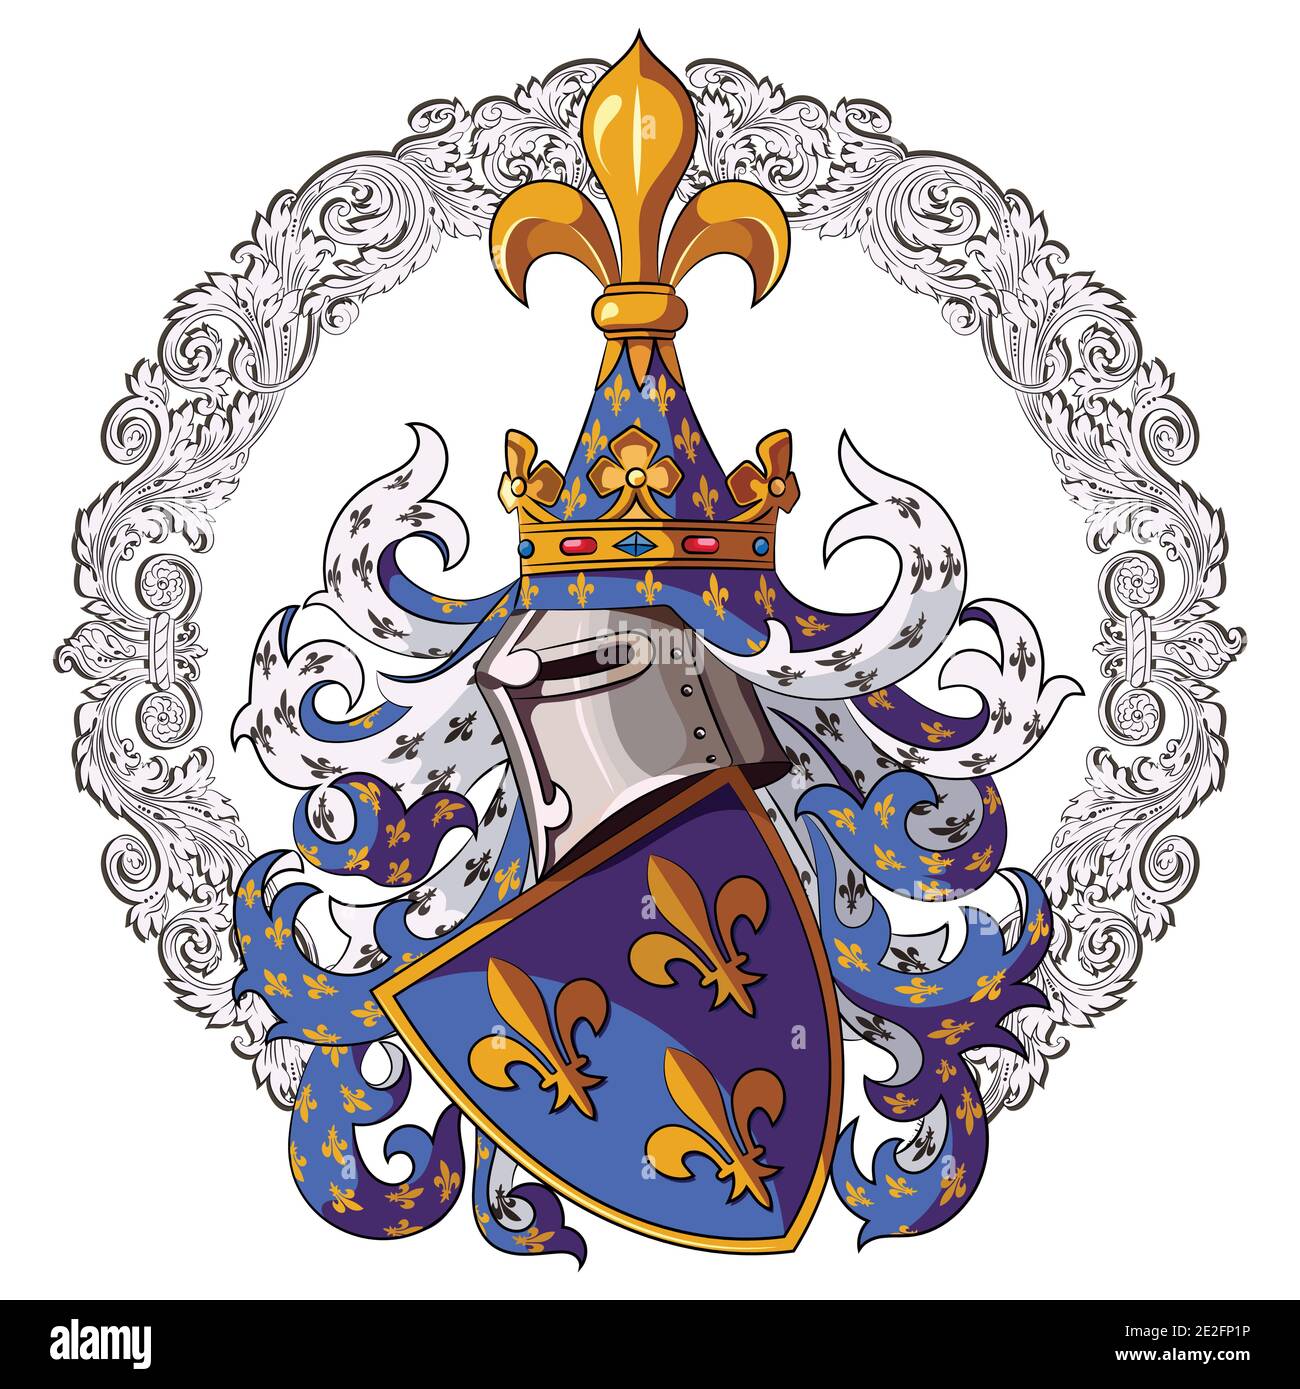 Ritterliches Wappen. Mittelalterliche Ritter Heraldik und mittelalterliche  Ritter Ornament Stock-Vektorgrafik - Alamy